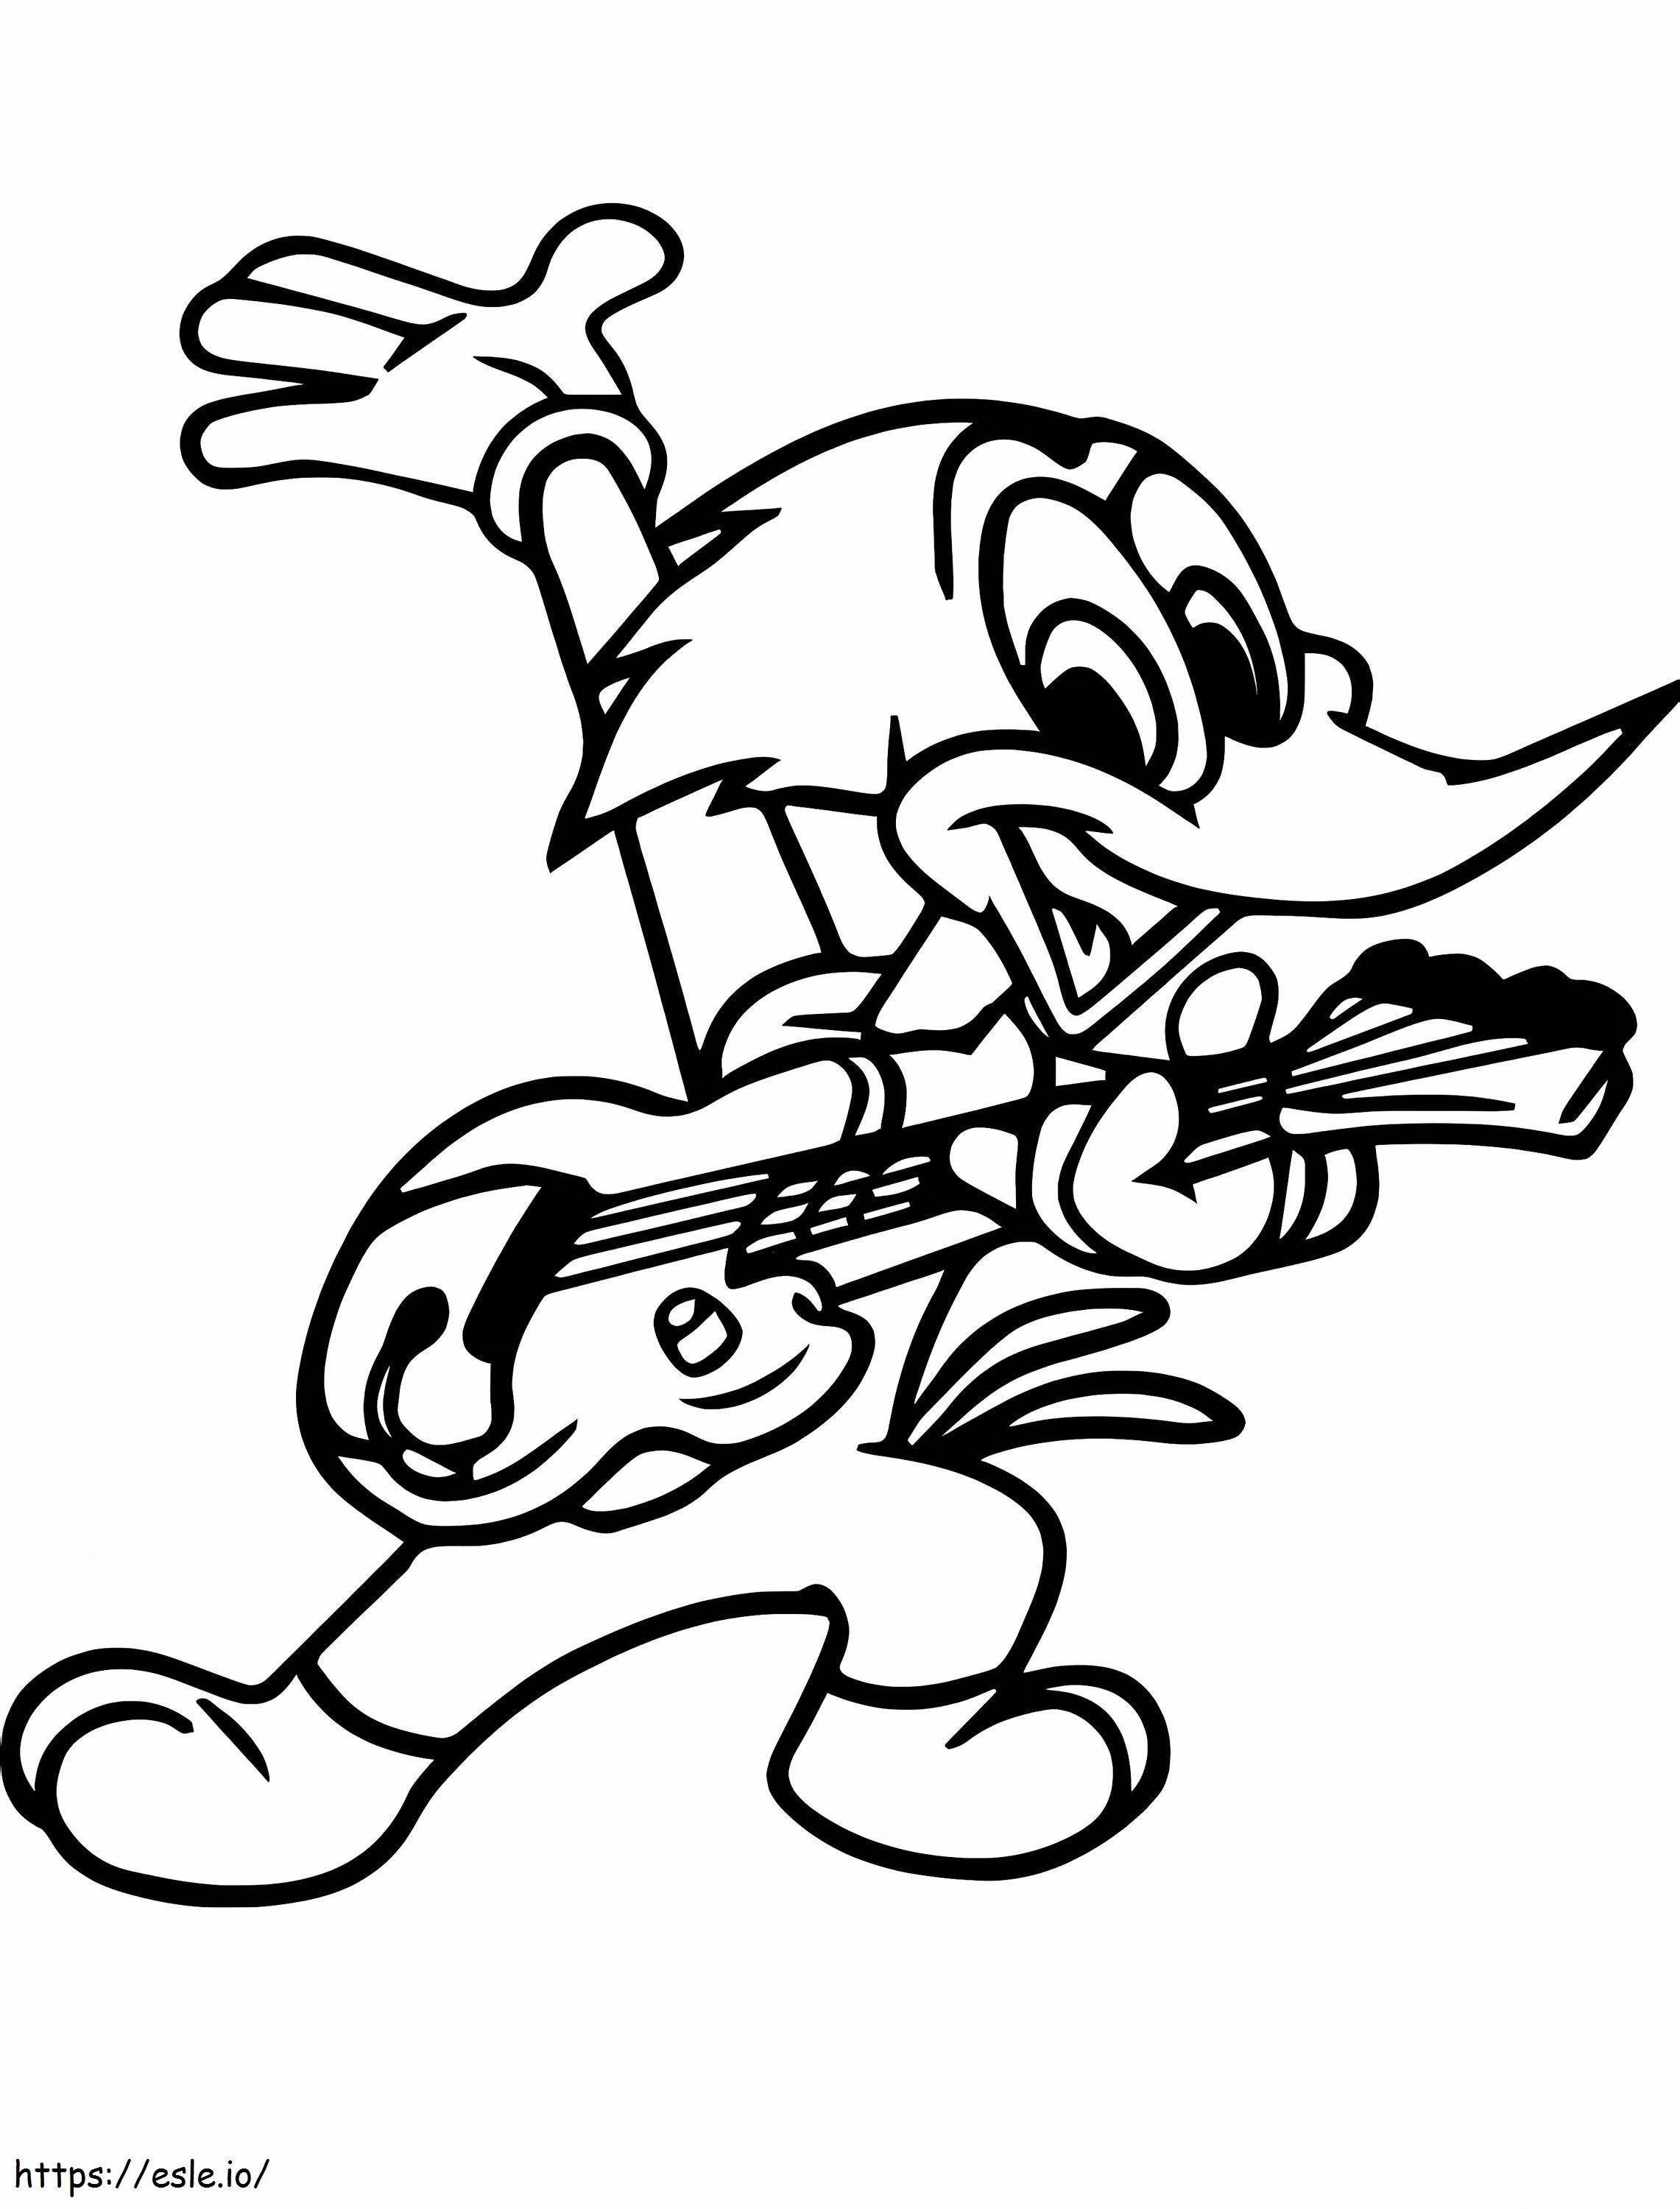 Coloriage Woody Woodpecker jouant de la guitare à imprimer dessin